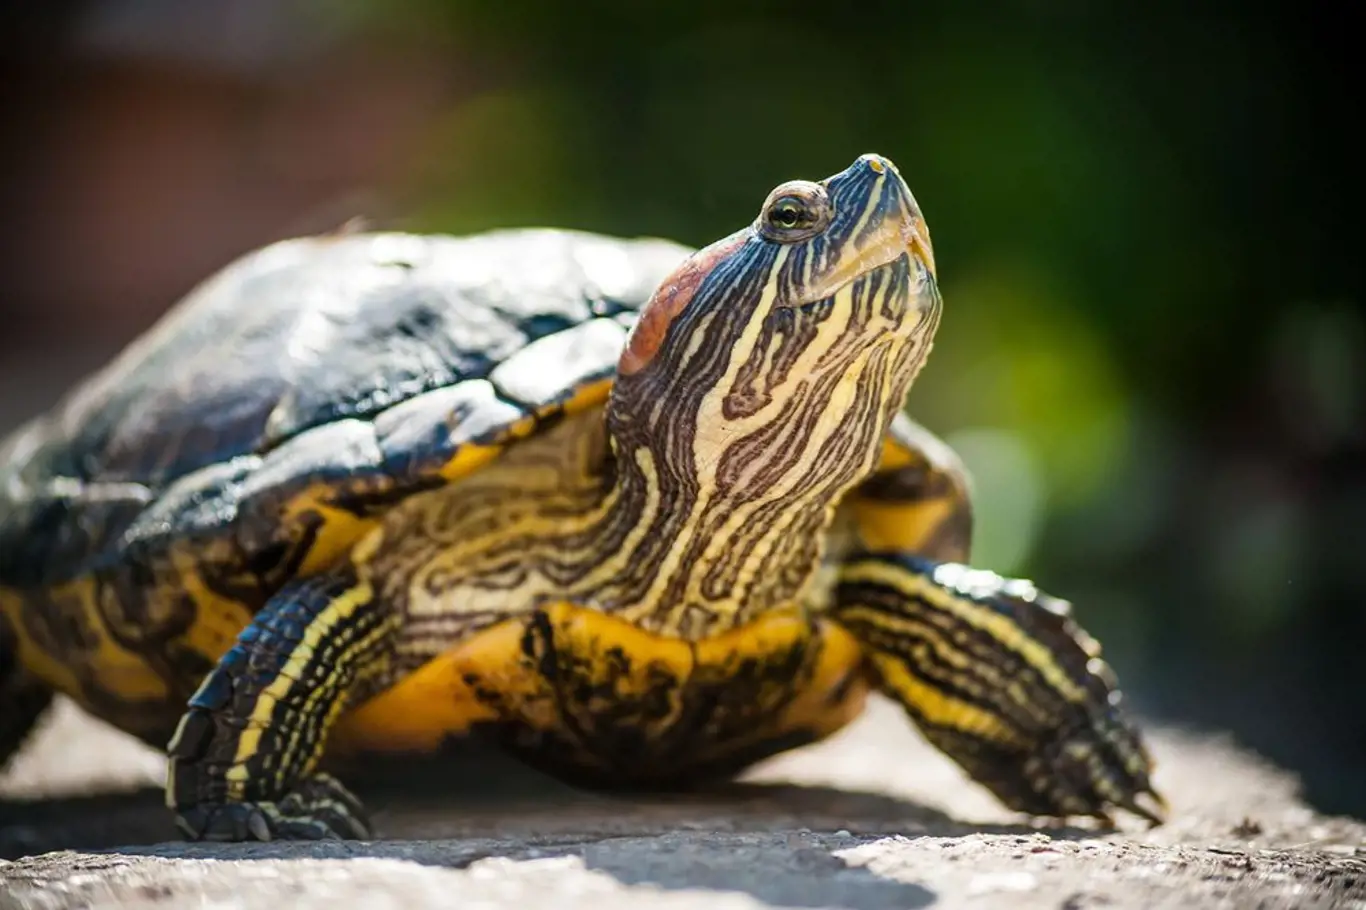 Želvy slunění milují a pro zachování zdraví ho nutně potřebují